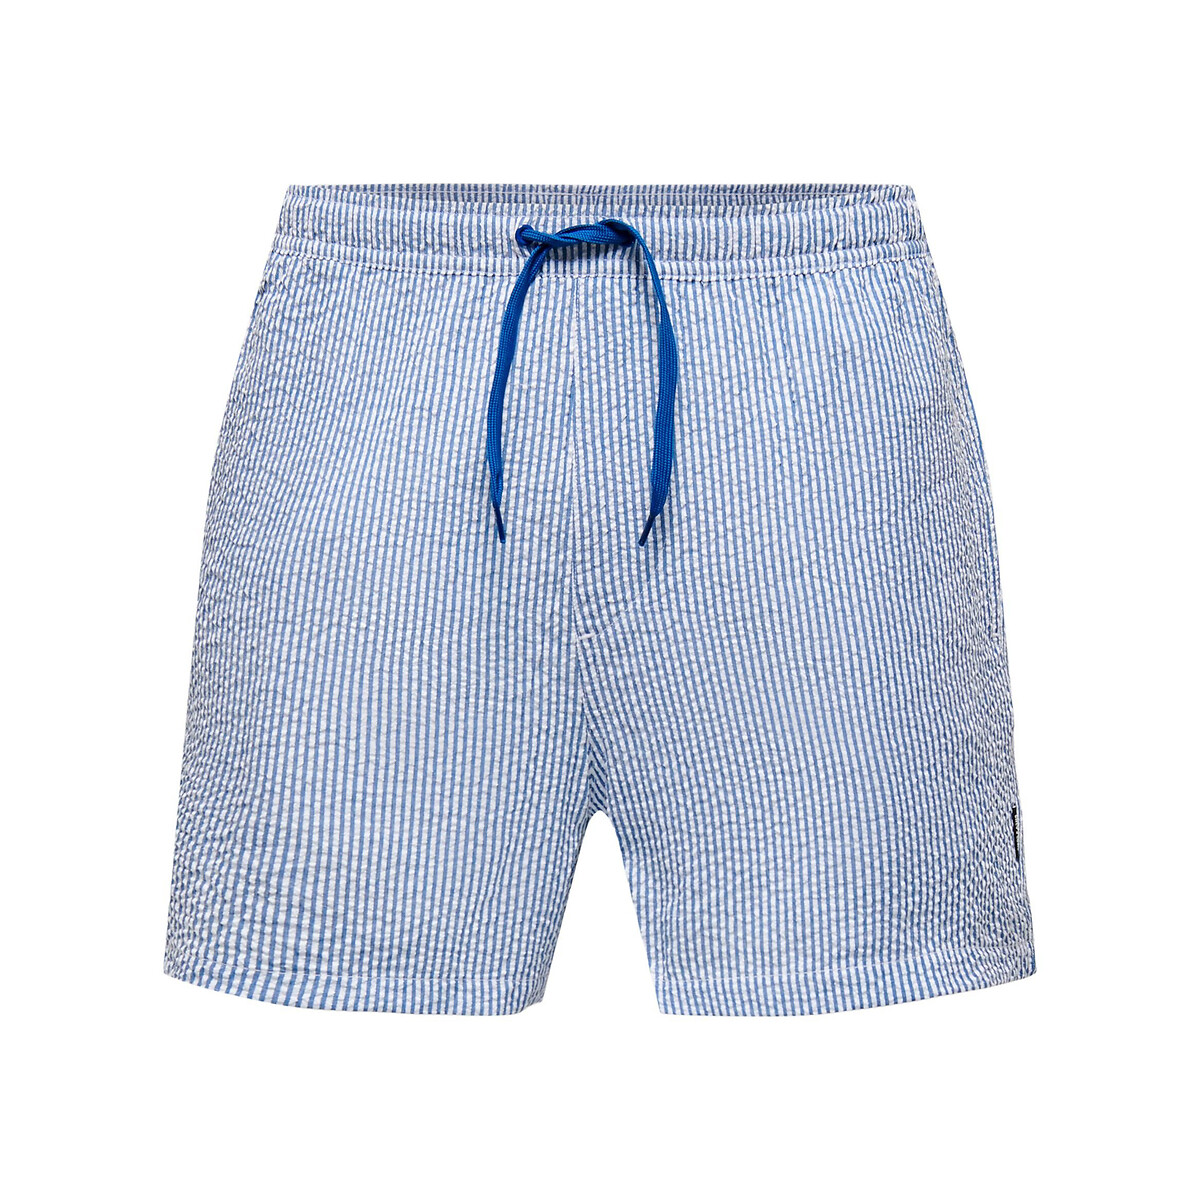 Шорты Пляжные в полоску из легкой полосатой ткани Ted XL синий LaRedoute, размер XL - фото 1